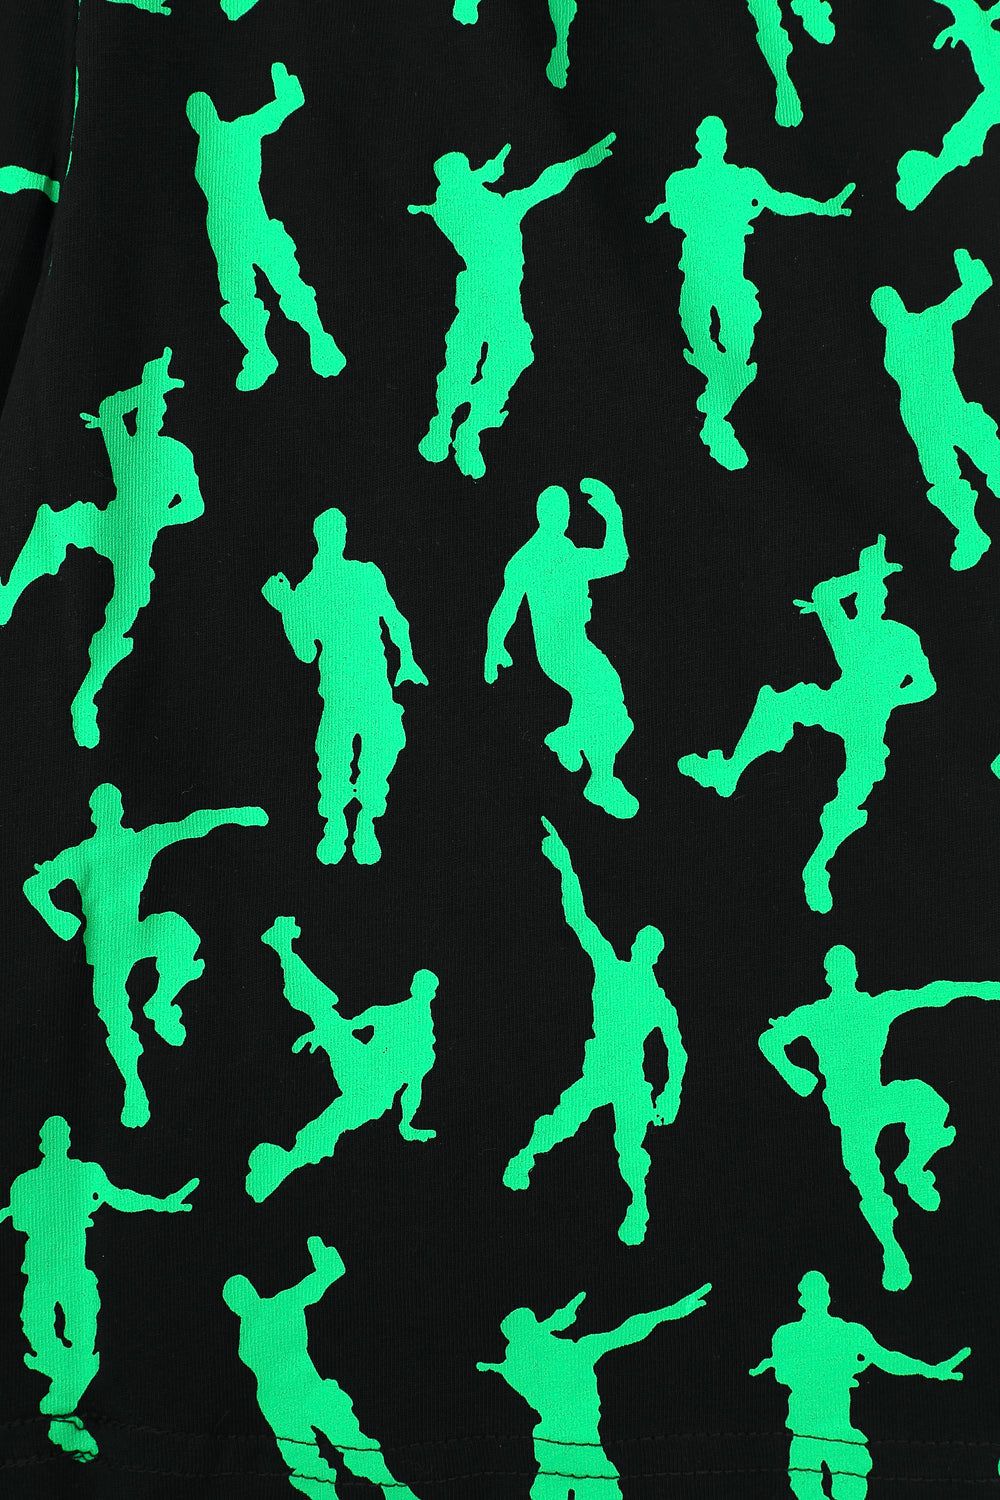 Legend Emote Dance Gaming Green Short Pyjamas - Pyjamas.com